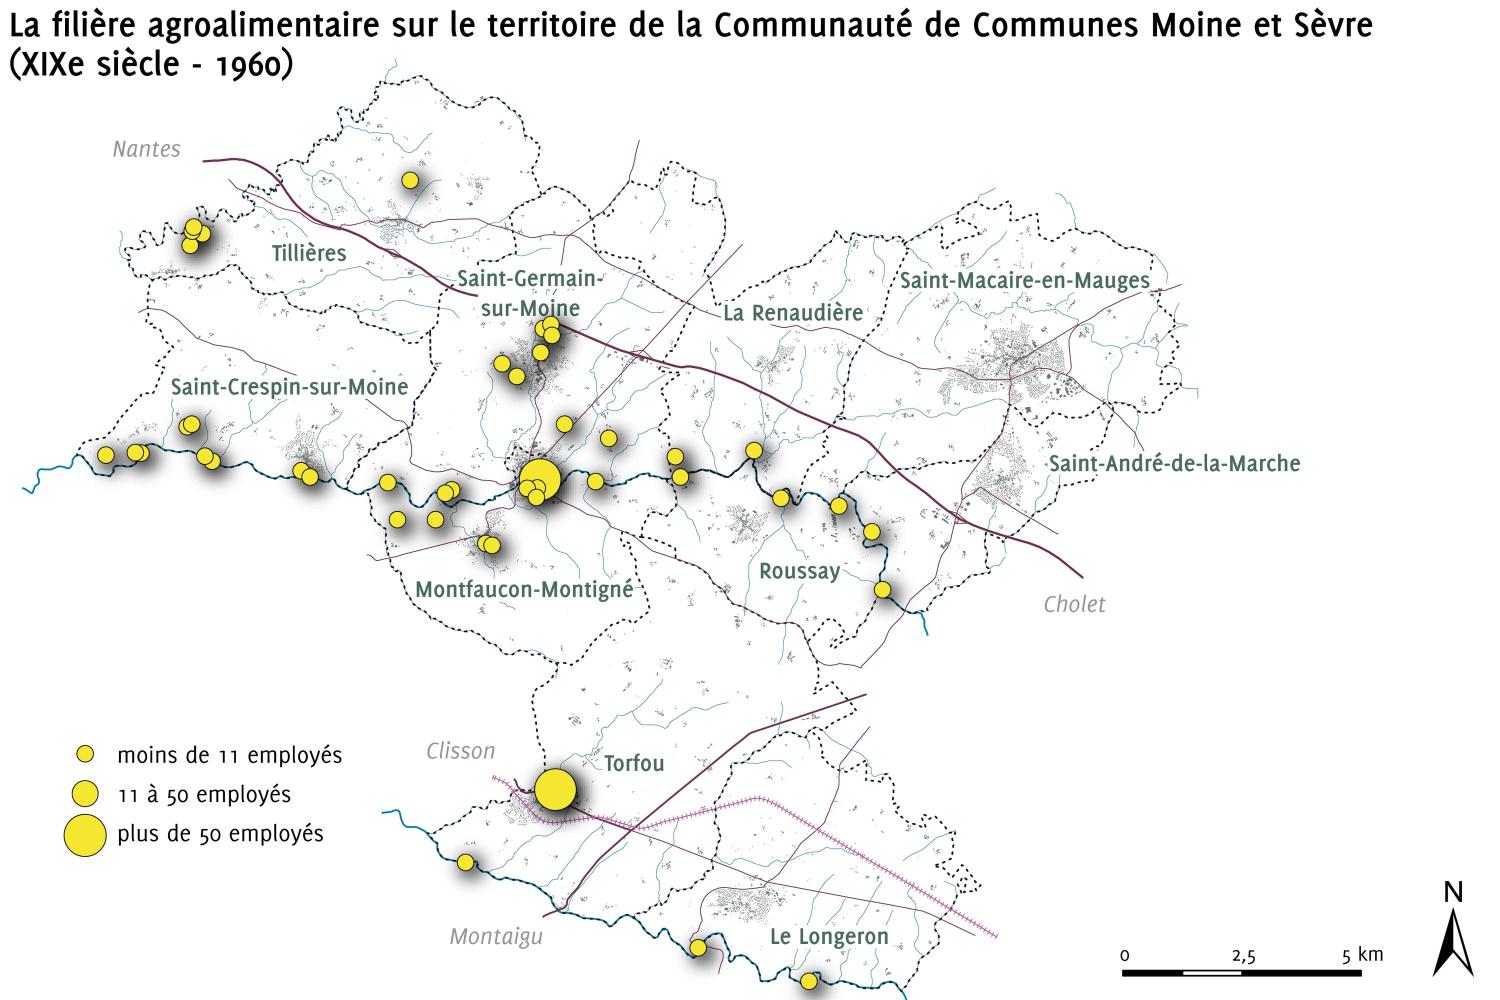 Présentation du patrimoine industriel de la Communauté de Communes de Moine et Sèvre